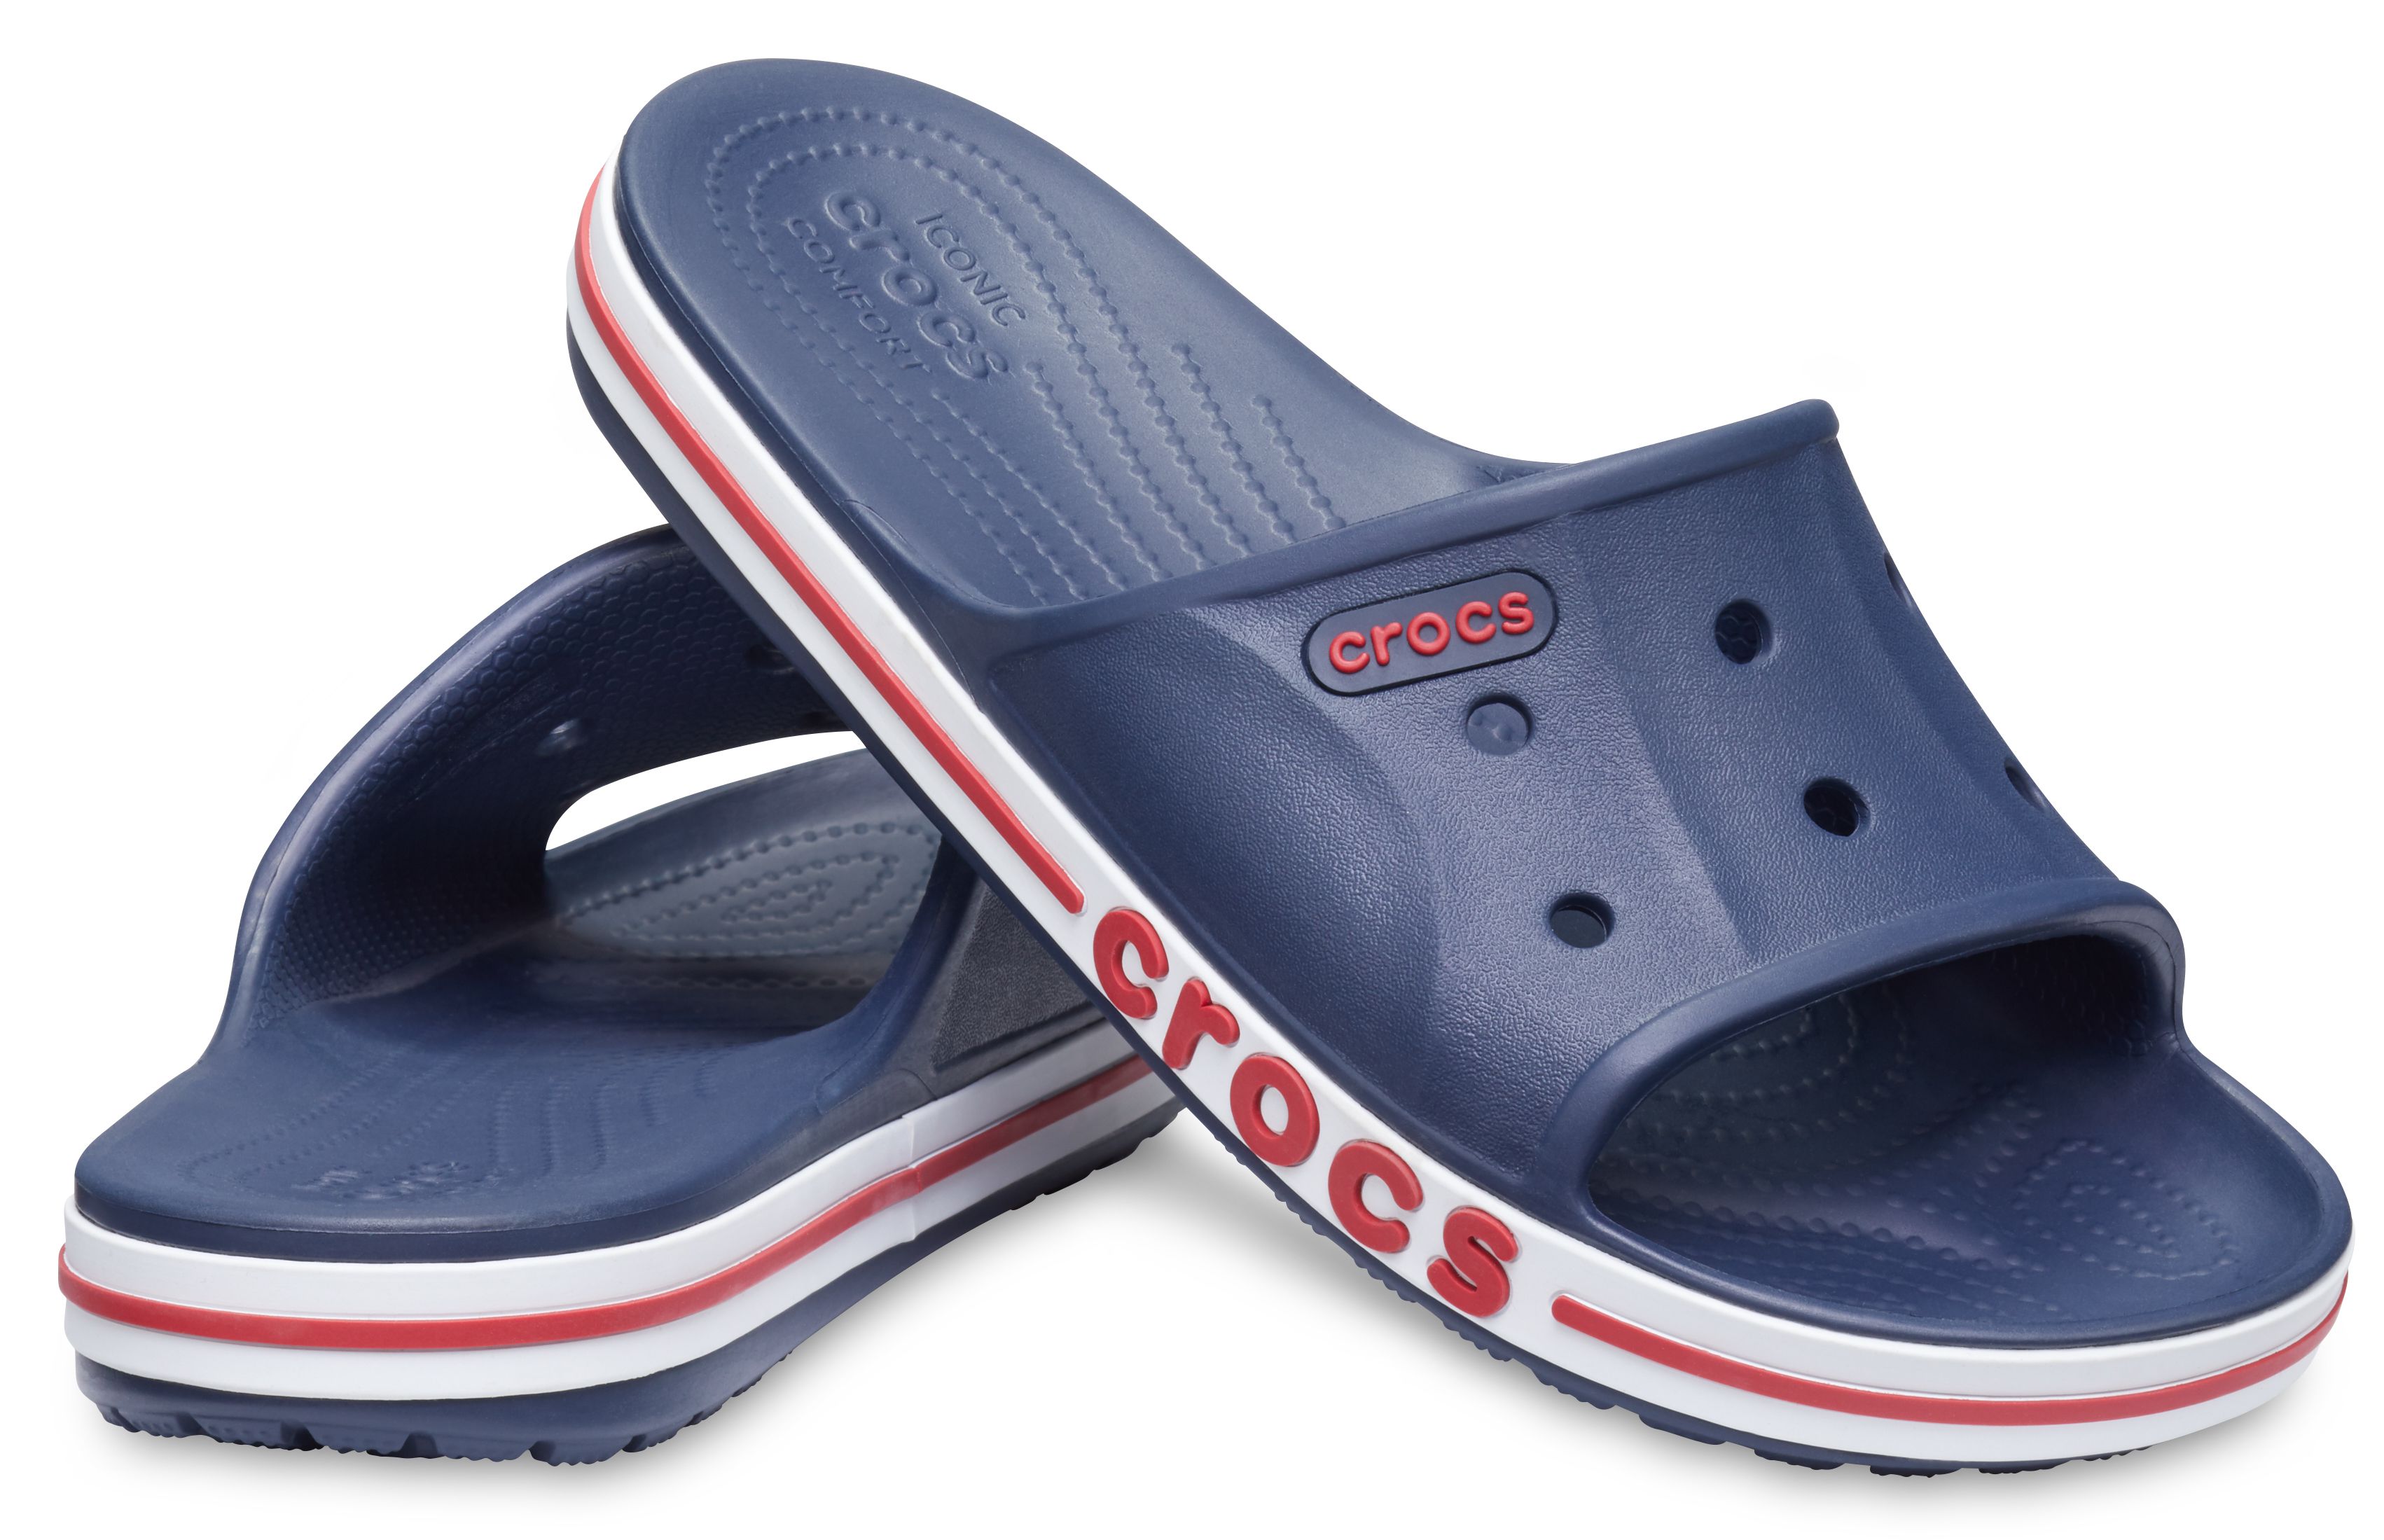 crocs men's sandals india